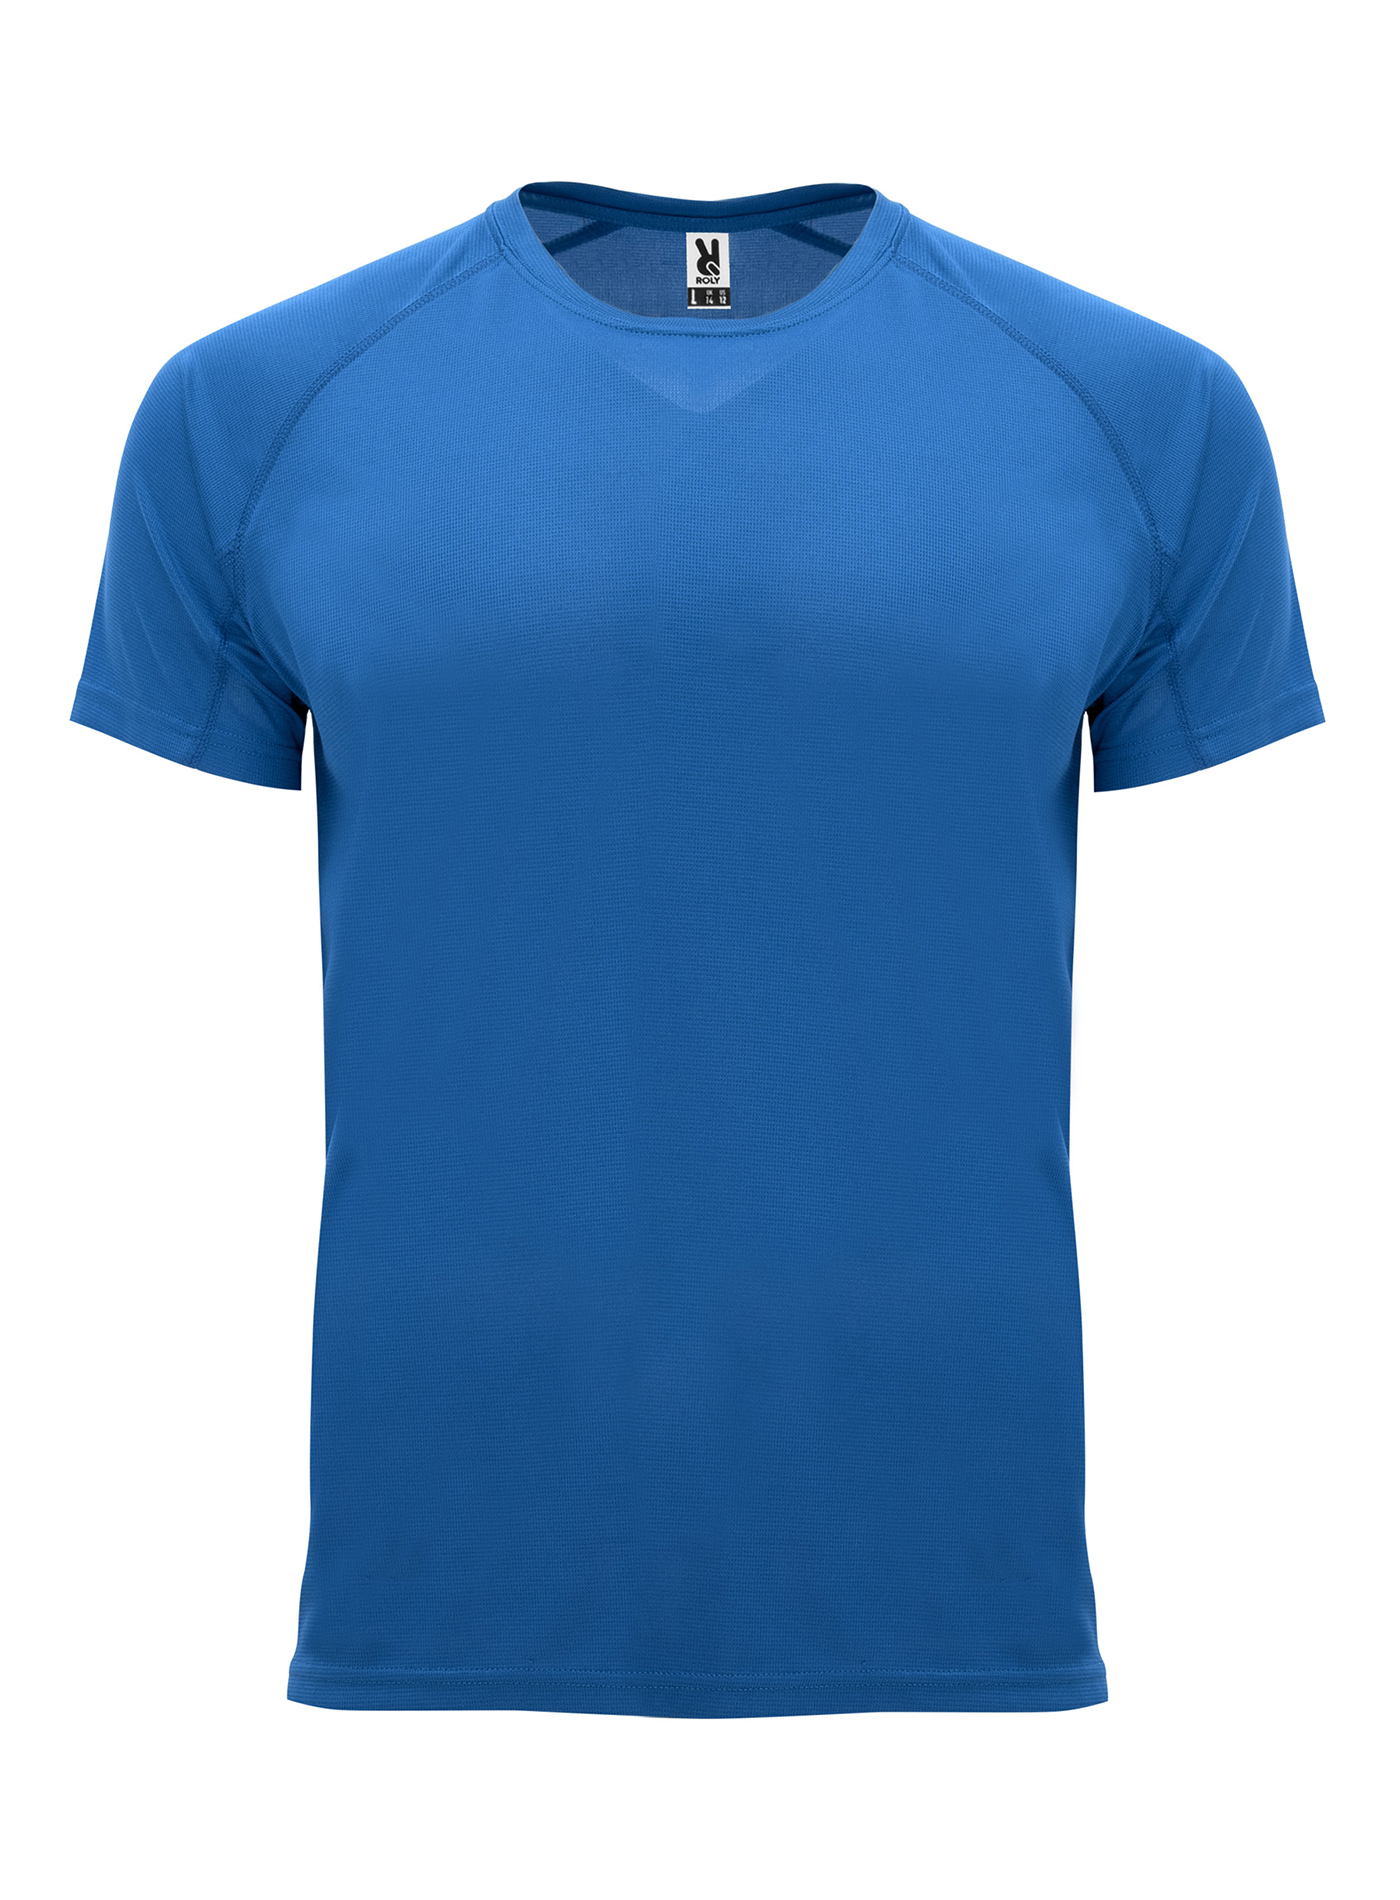 Pánské sportovní tričko Roly Bahrain - královská modrá L